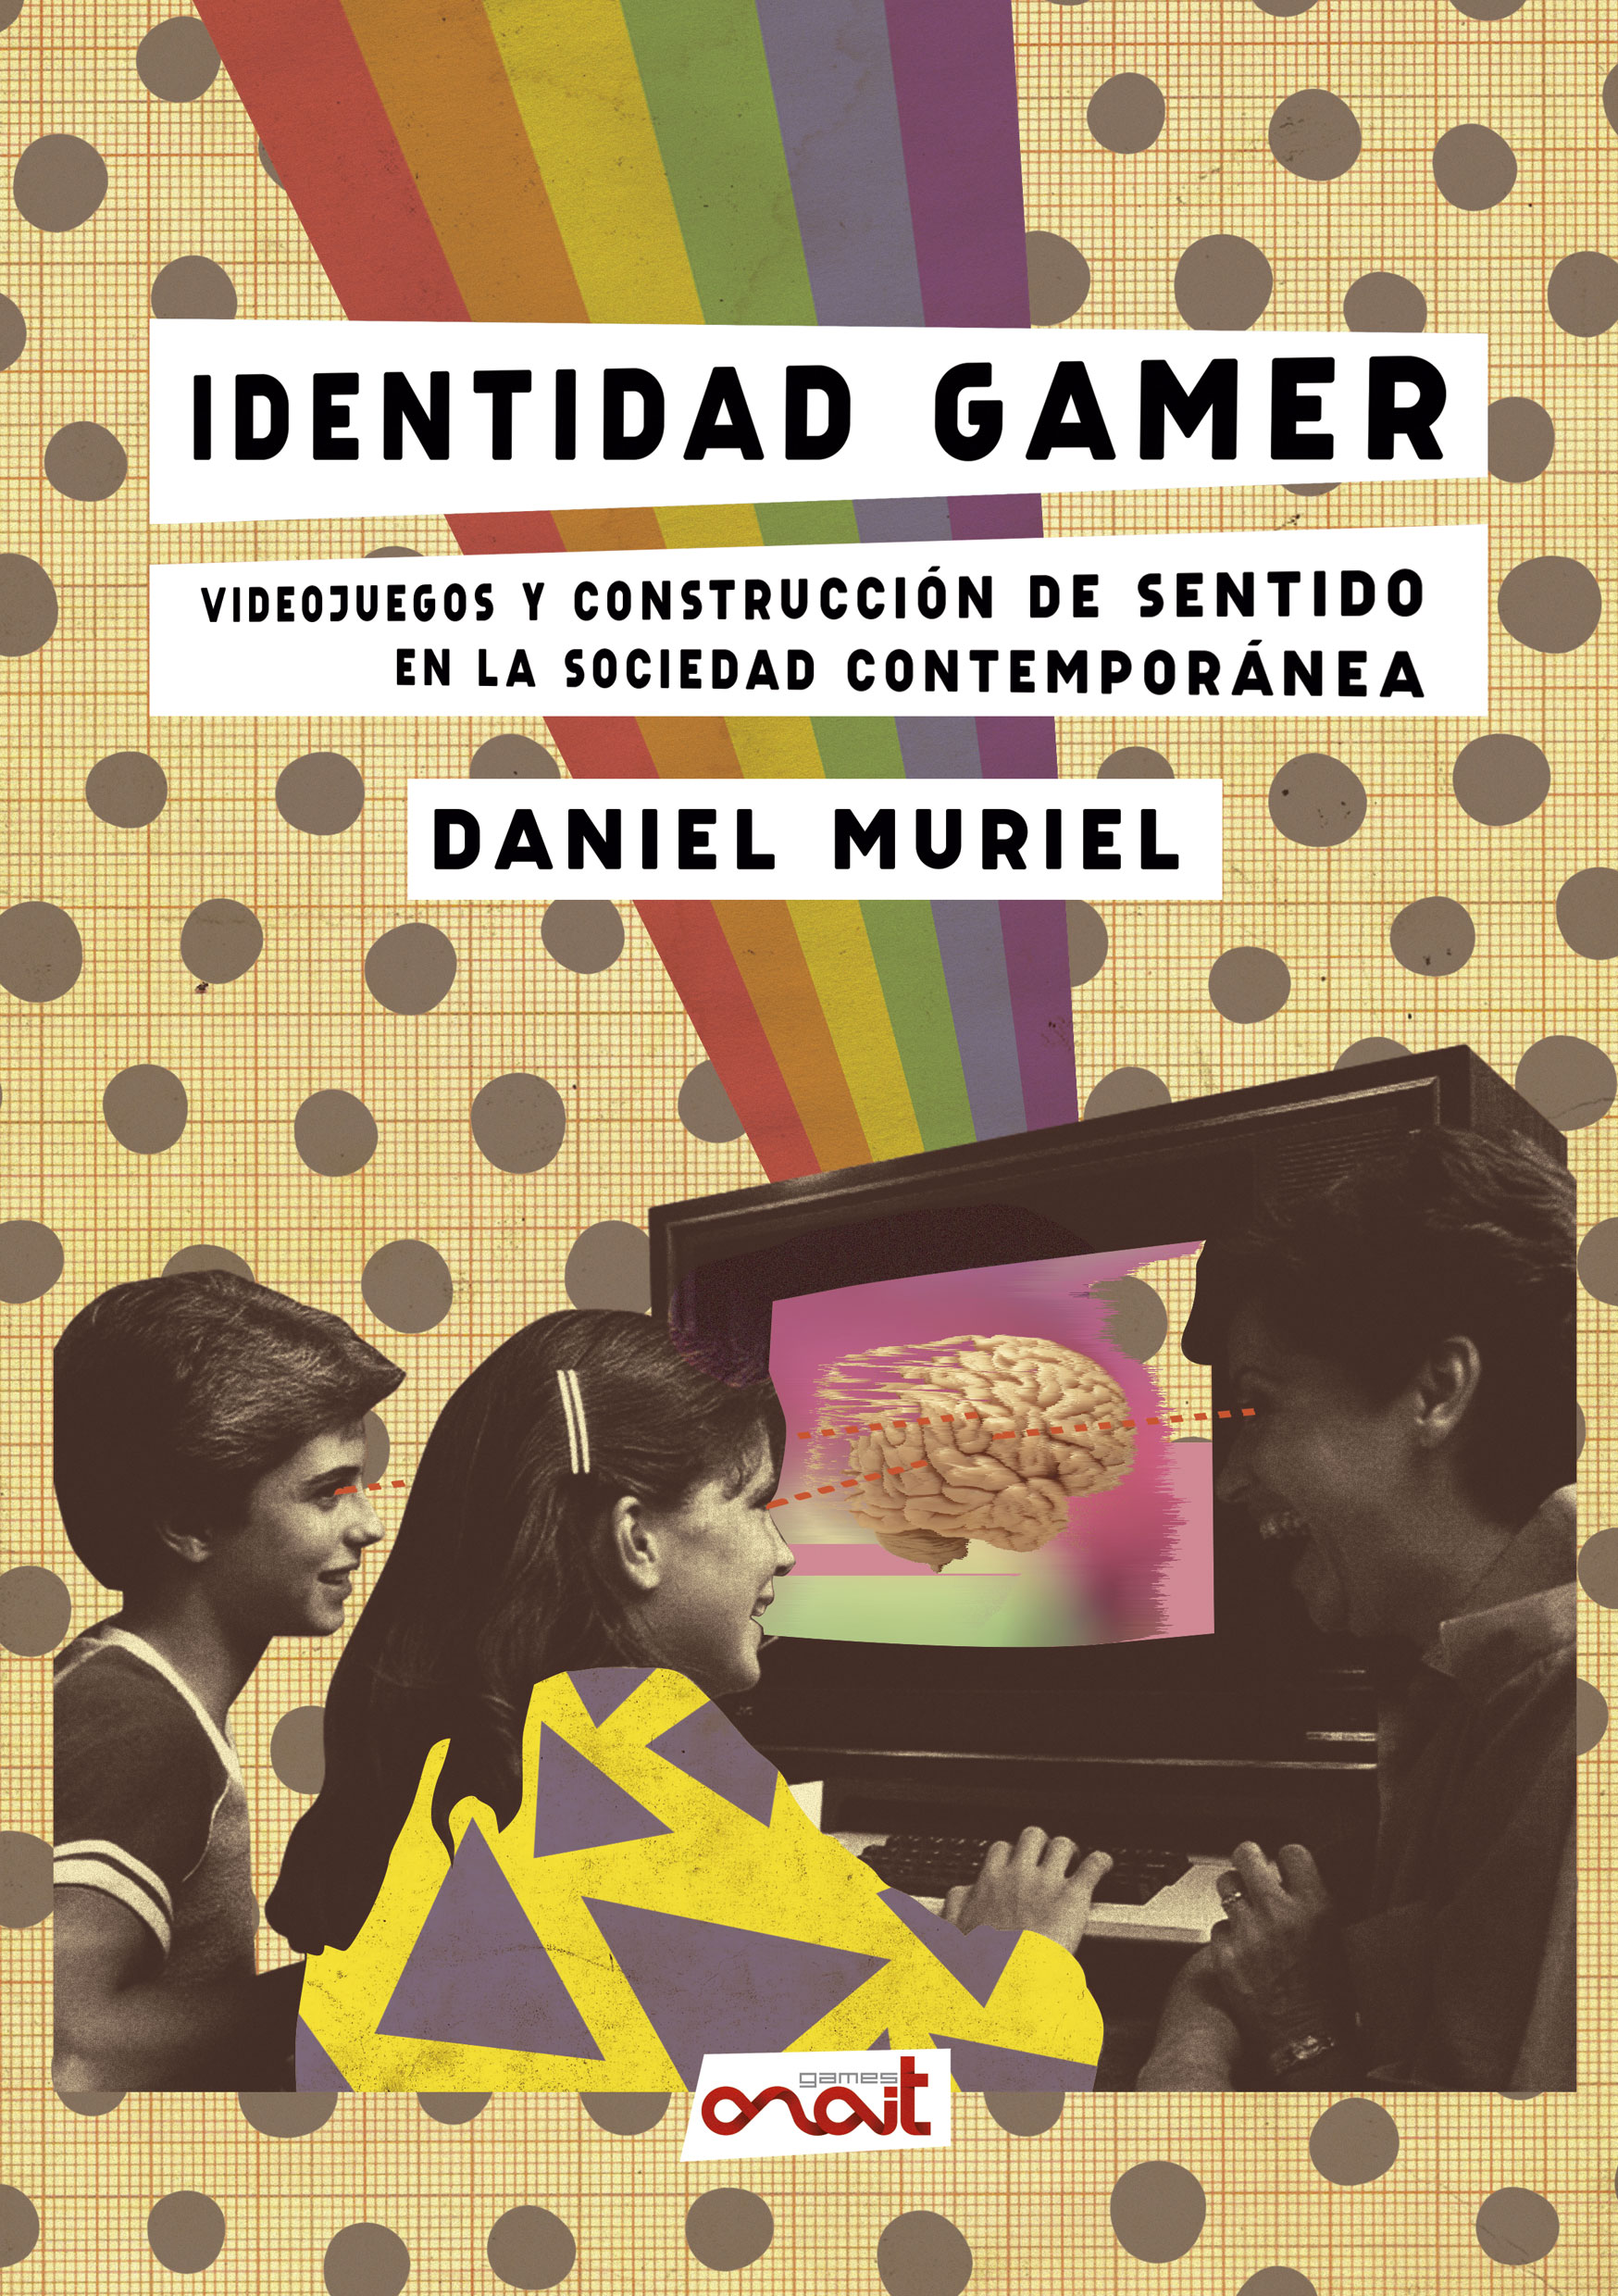 Identidad gamer, de Daniel Muriel, ya disponible en librerías